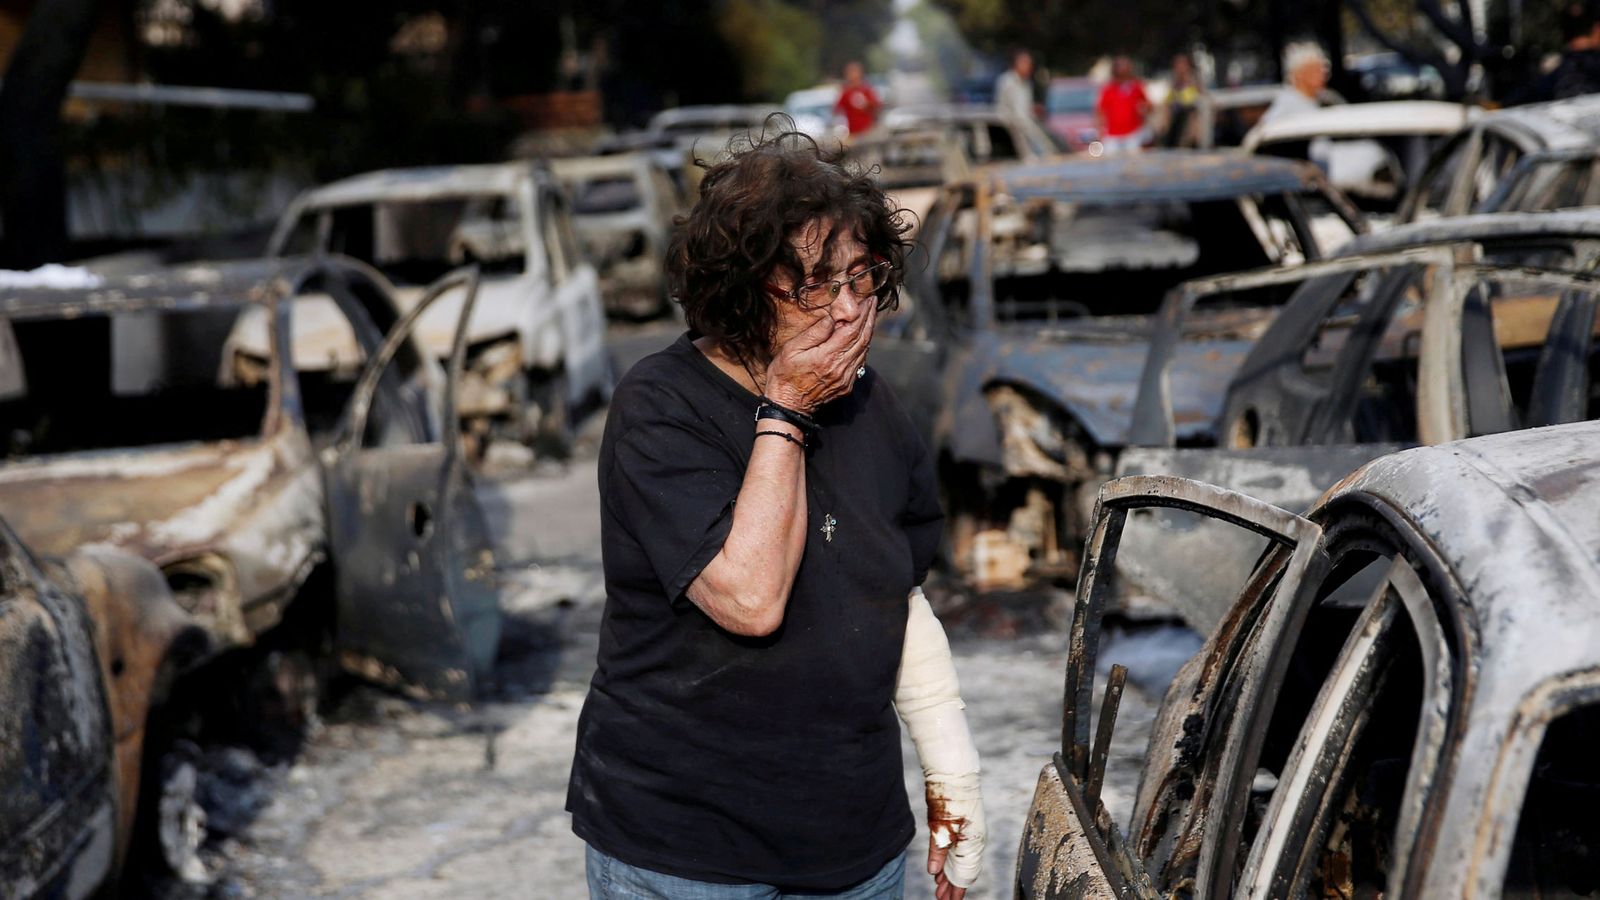 Foto: Una mujer herida se tapa la boca mientras trata de encontrar a su perro tras el incendio en Mati, cerca de Atenas, el 24 de julio de 2018. (Reuters)